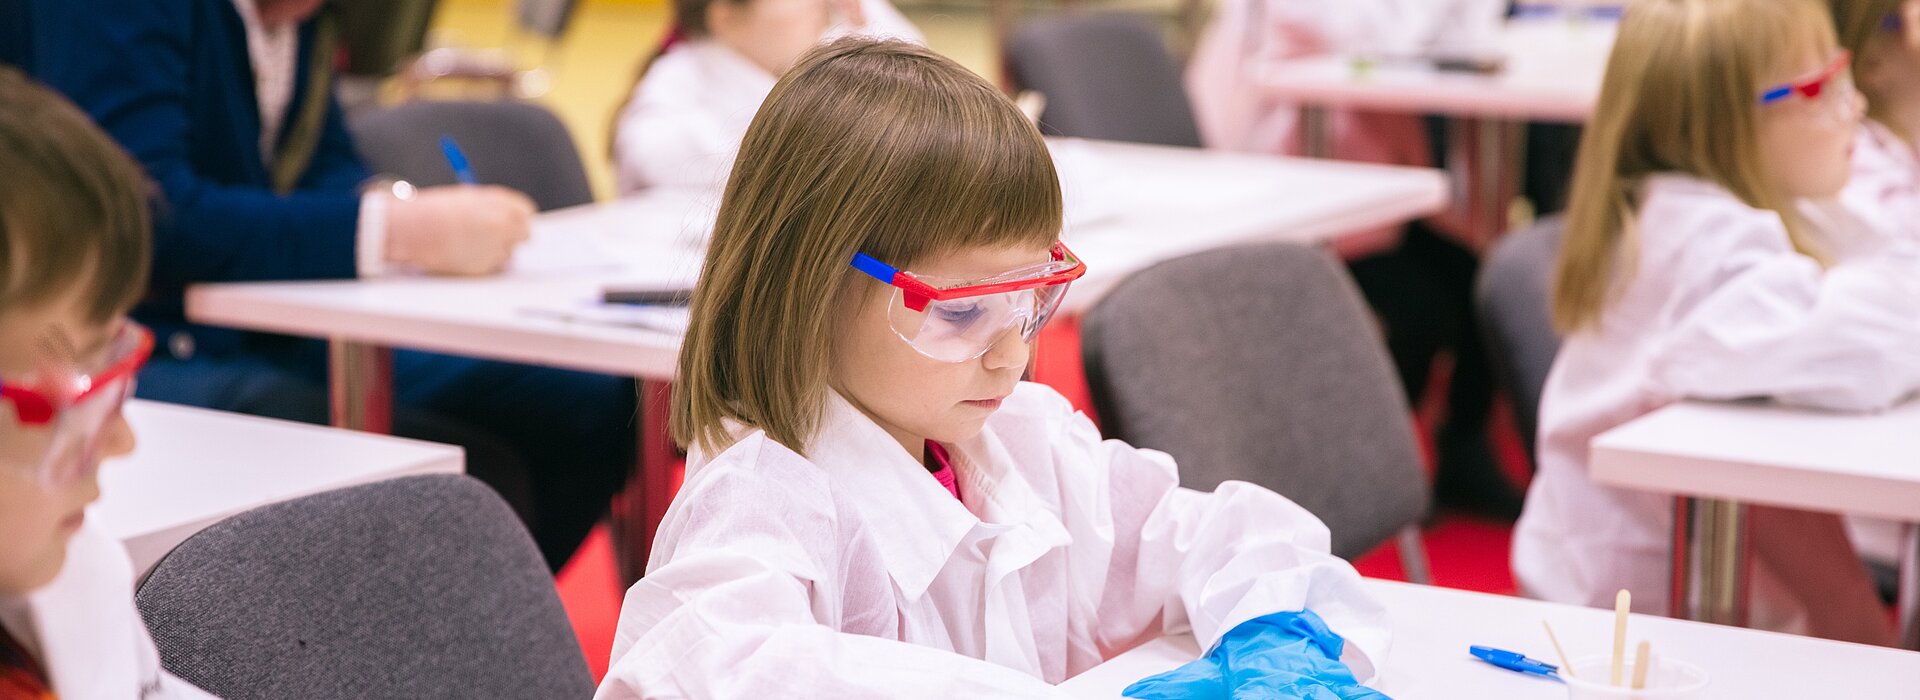 Criança sentada na mesa da sala de aula fazendo experimentos